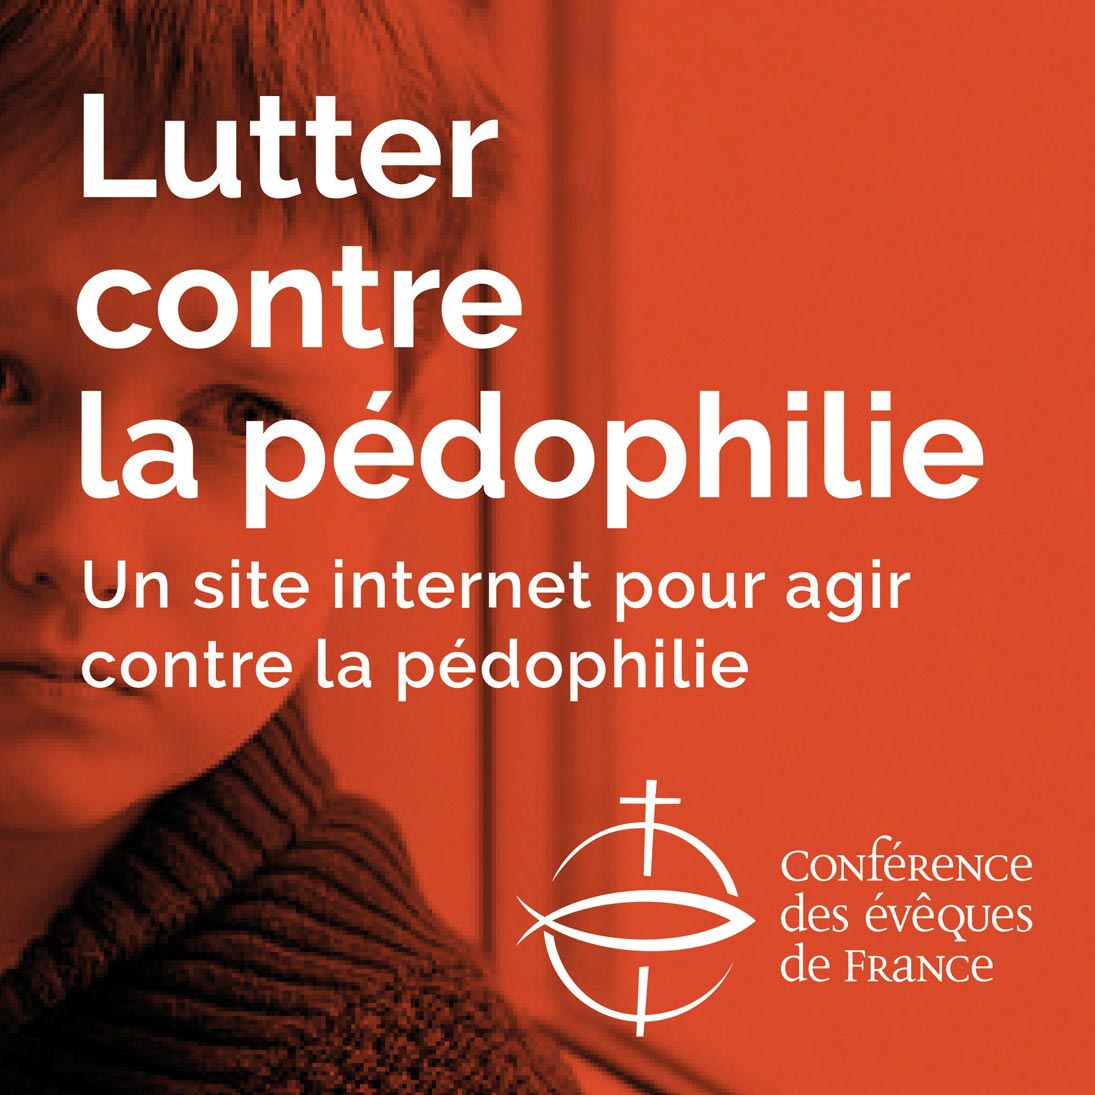 Lutter contre la pédophilie - Conférence des évêques de France